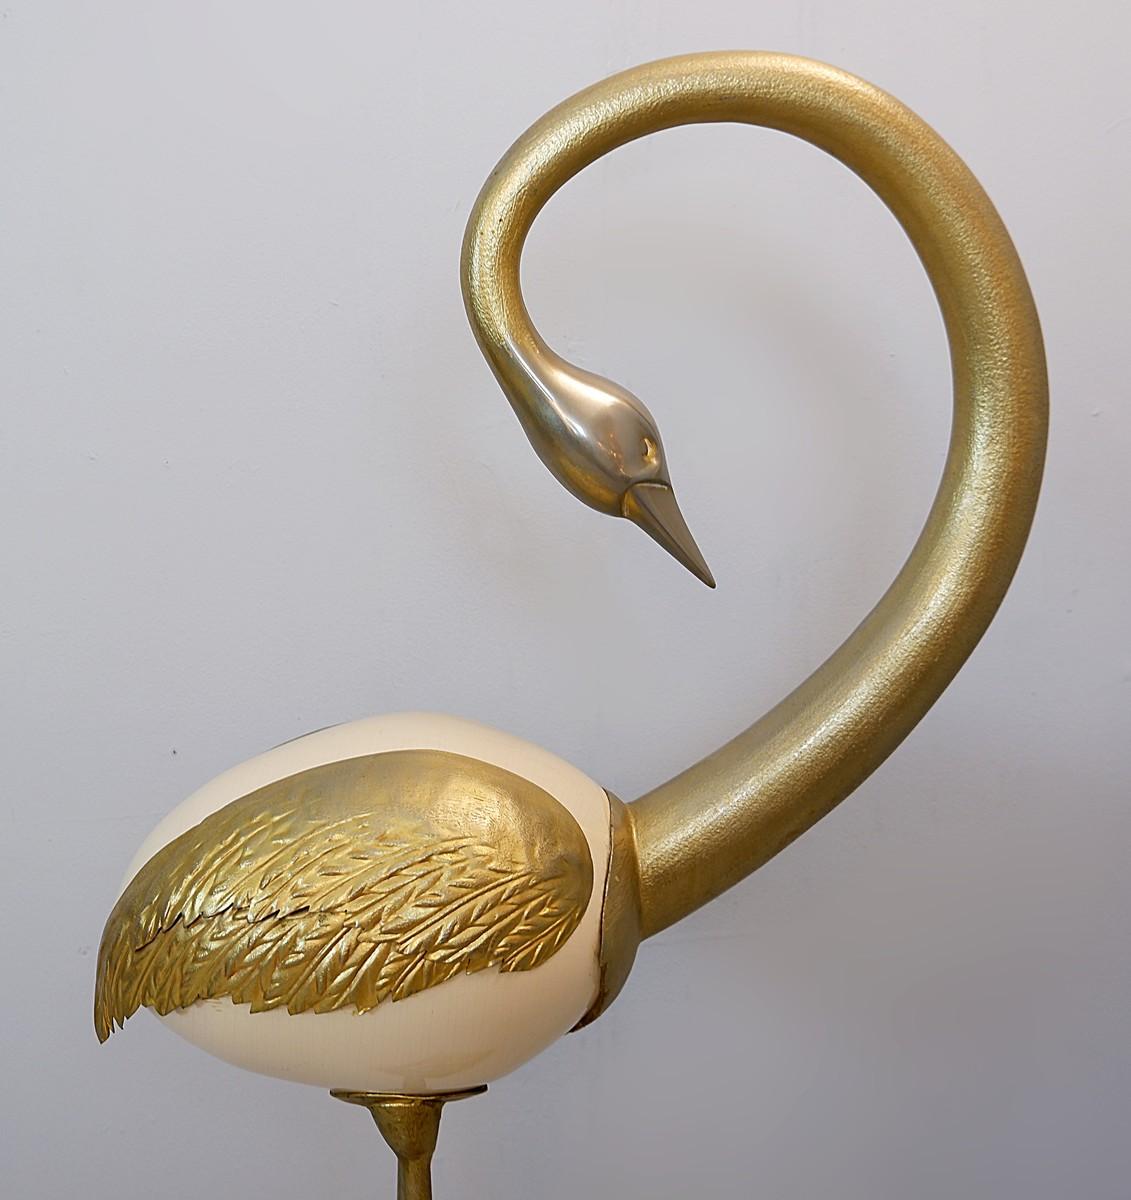 Sculpture d'autruche réalisée à partir d'un œuf d'autruche avec du métal doré.